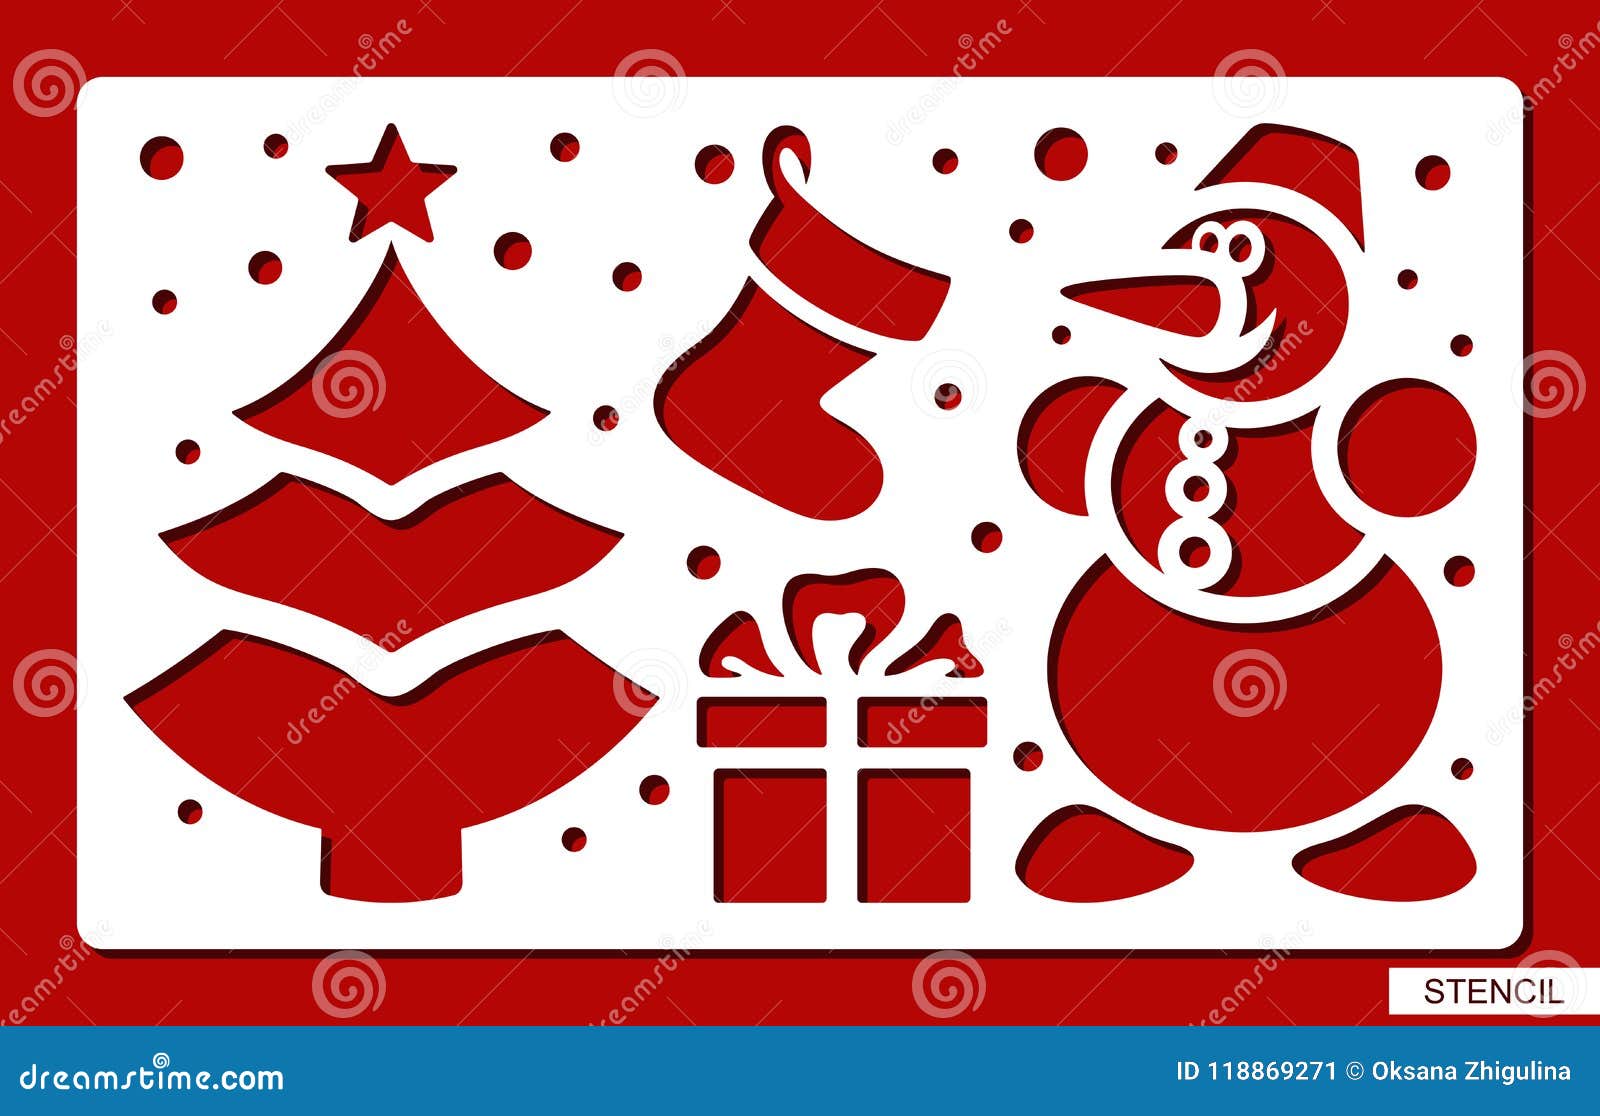 Manualidades o decoración del hogar Juego de 3 Plantillas de Navidad con diseño de Copos de Nieve para Pintar sobre Madera KOBWA 